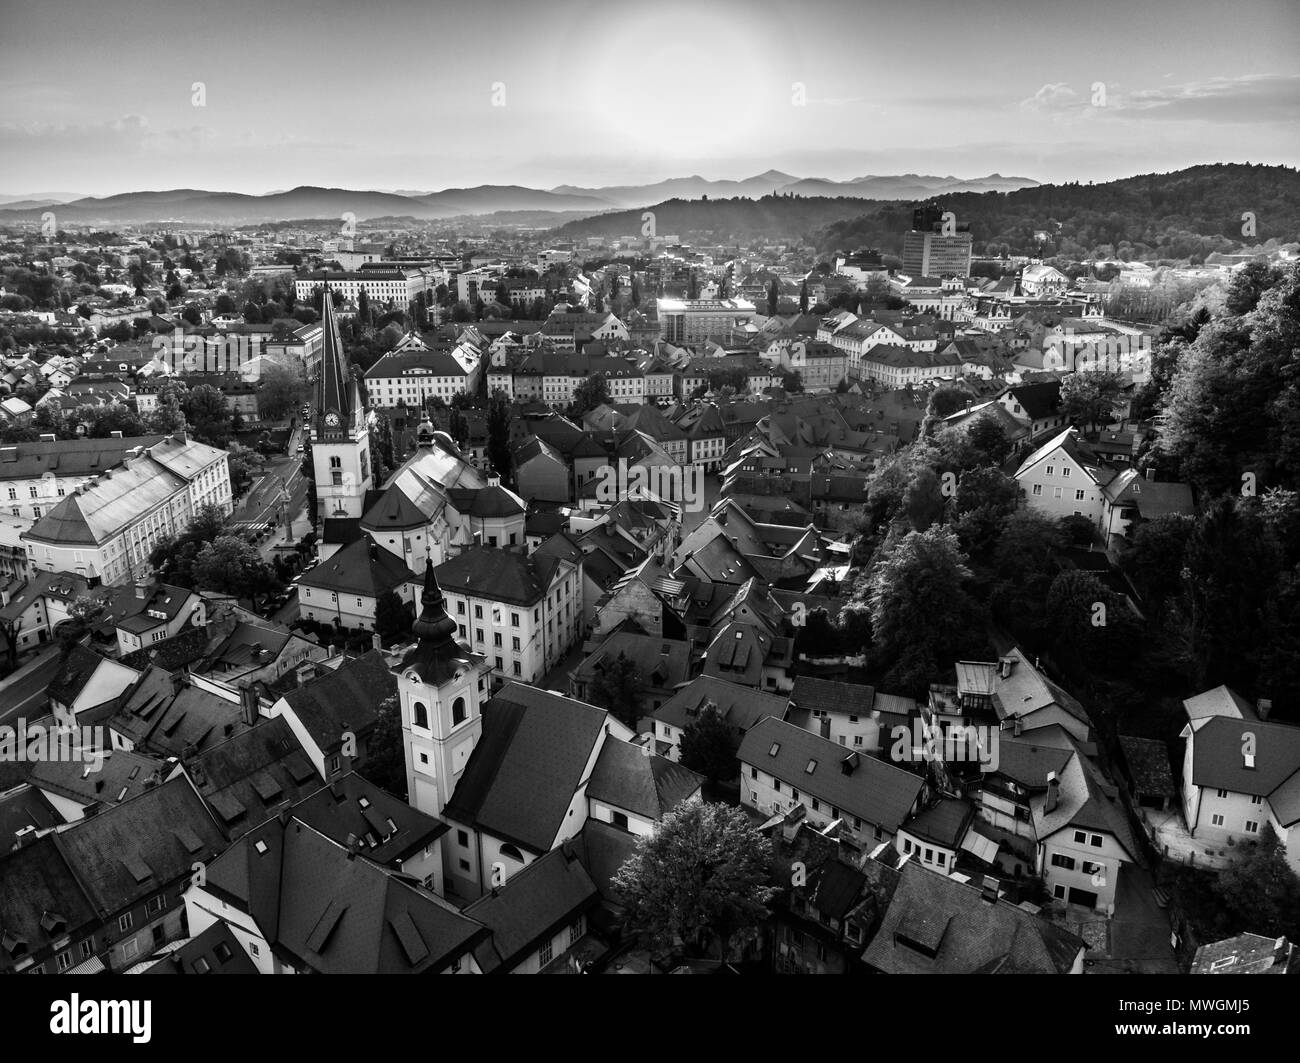 Vue aérienne de la vieille ville médiévale centre de Ljubljana, capitale de la Slovénie. Banque D'Images